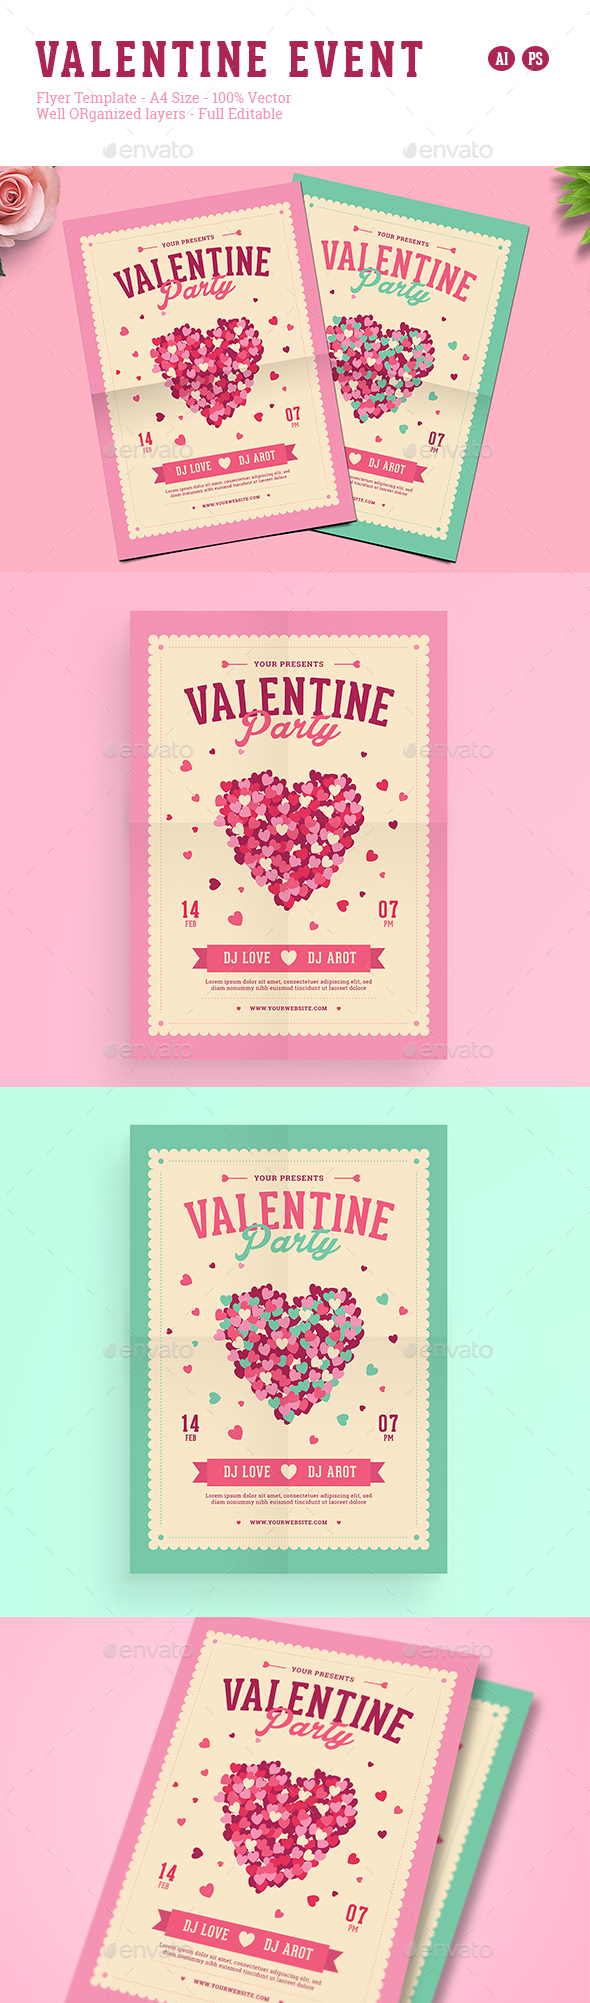 Valentine Event Flyer